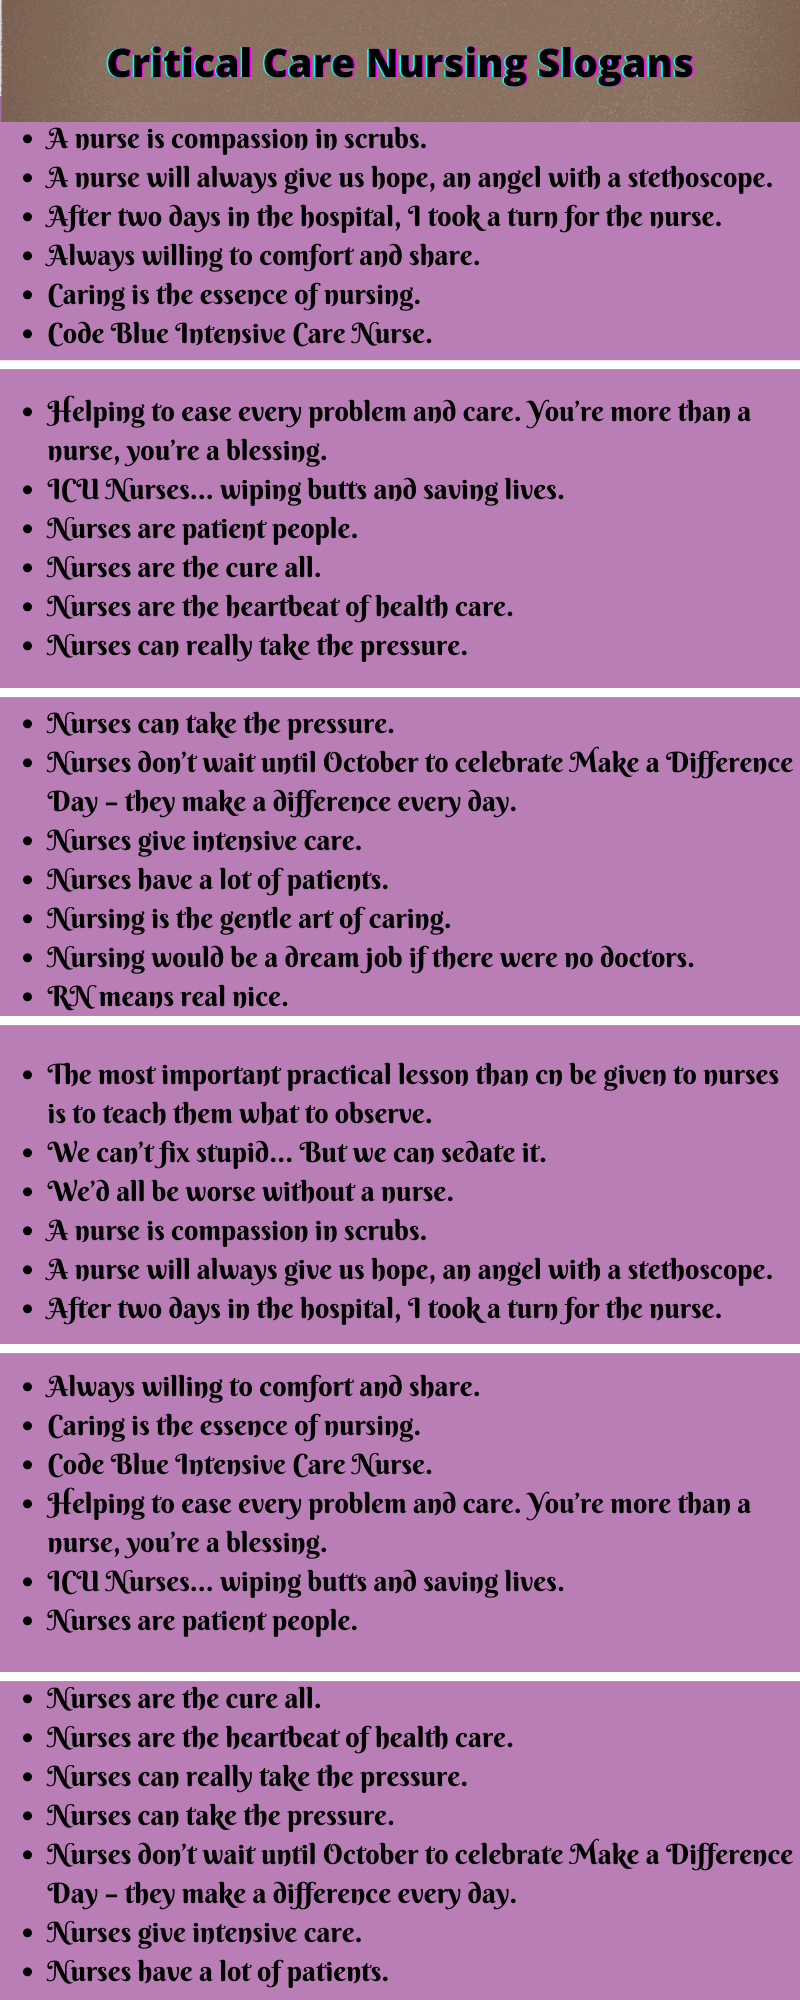 Critical Care Nursing Slogans 